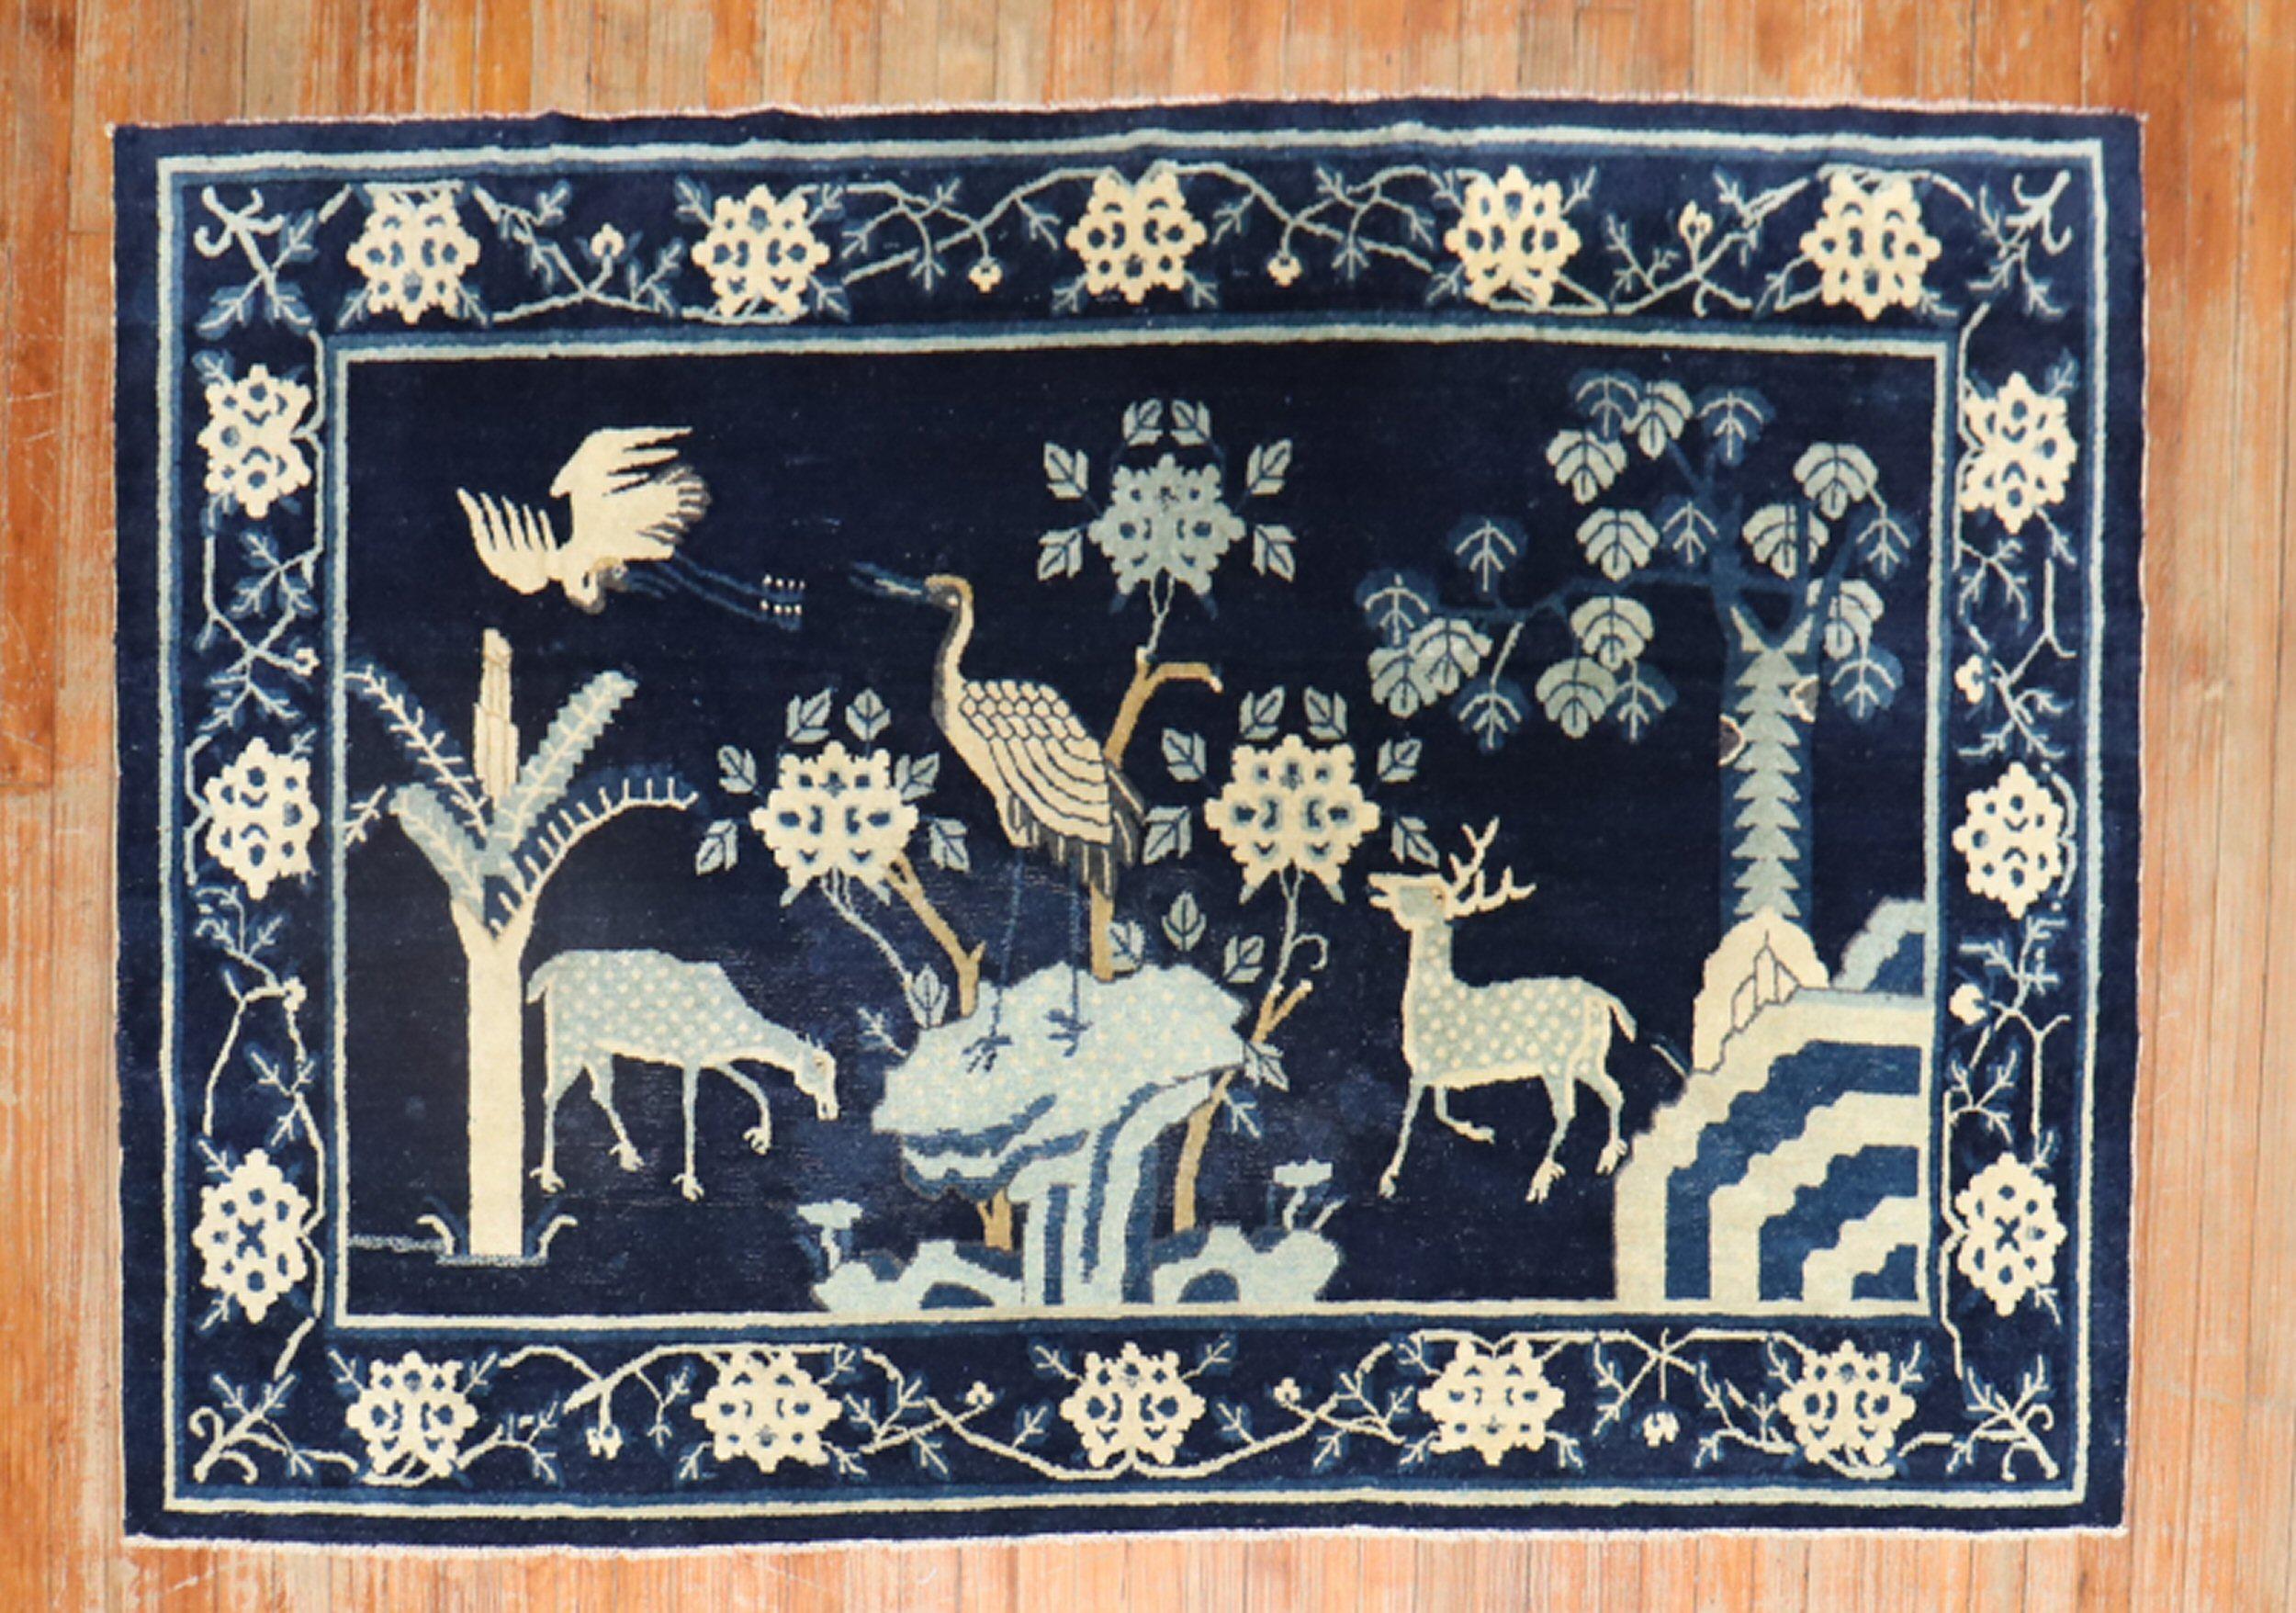 Ein chinesischer Teppich des frühen 20. Jahrhunderts mit einem Tiermotiv auf einem marineblauen Feld

Maße: 4'4'' x 6'10''.